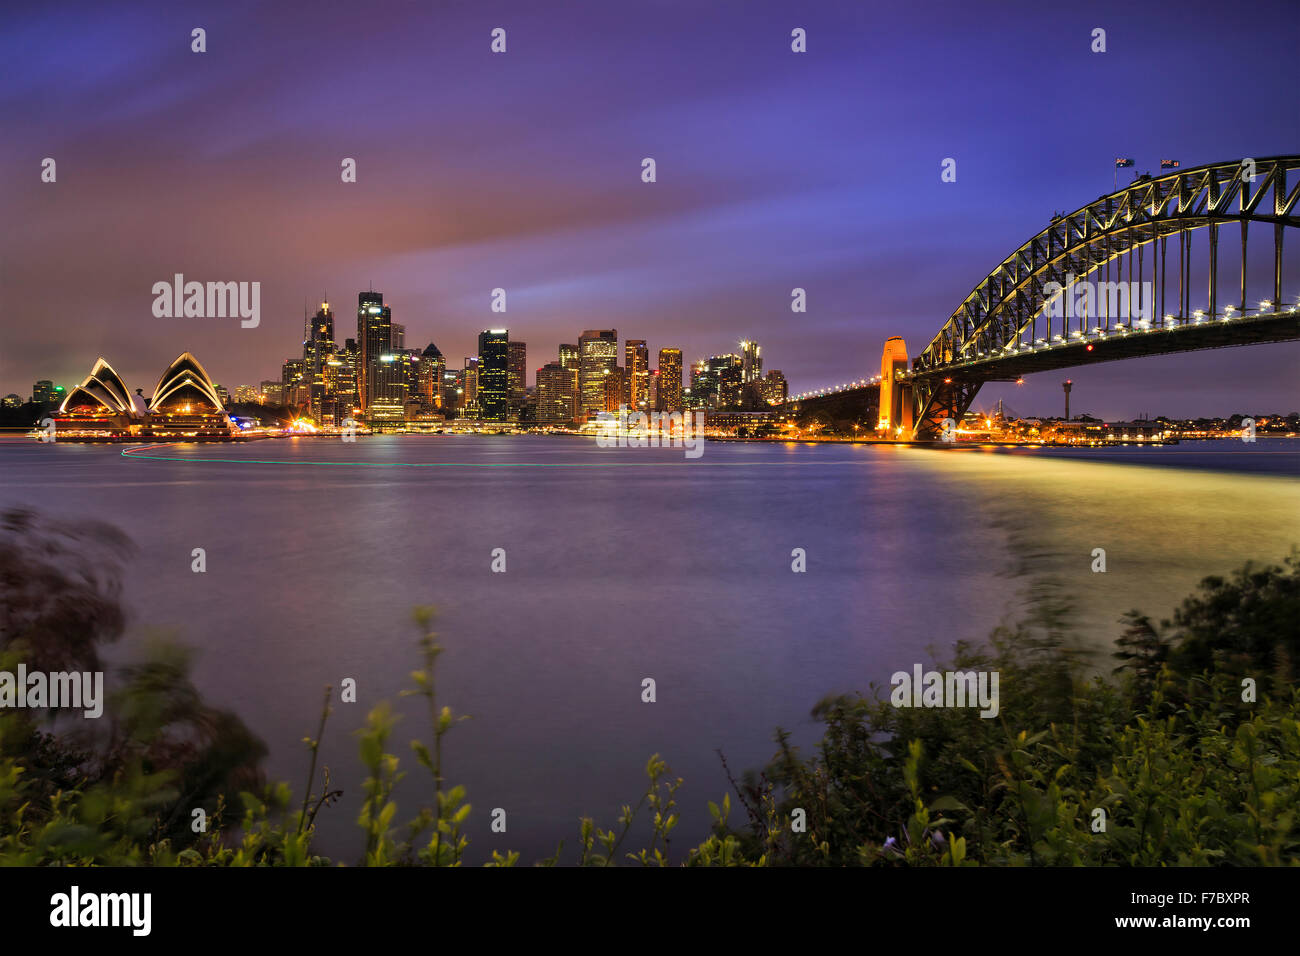 Wahrzeichen von Sydney City CDB über den Hafen mit Bogen der Brücke, Wolkenkratzer und Haus bei Sonnenuntergang mit voller Beleuchtung Stockfoto